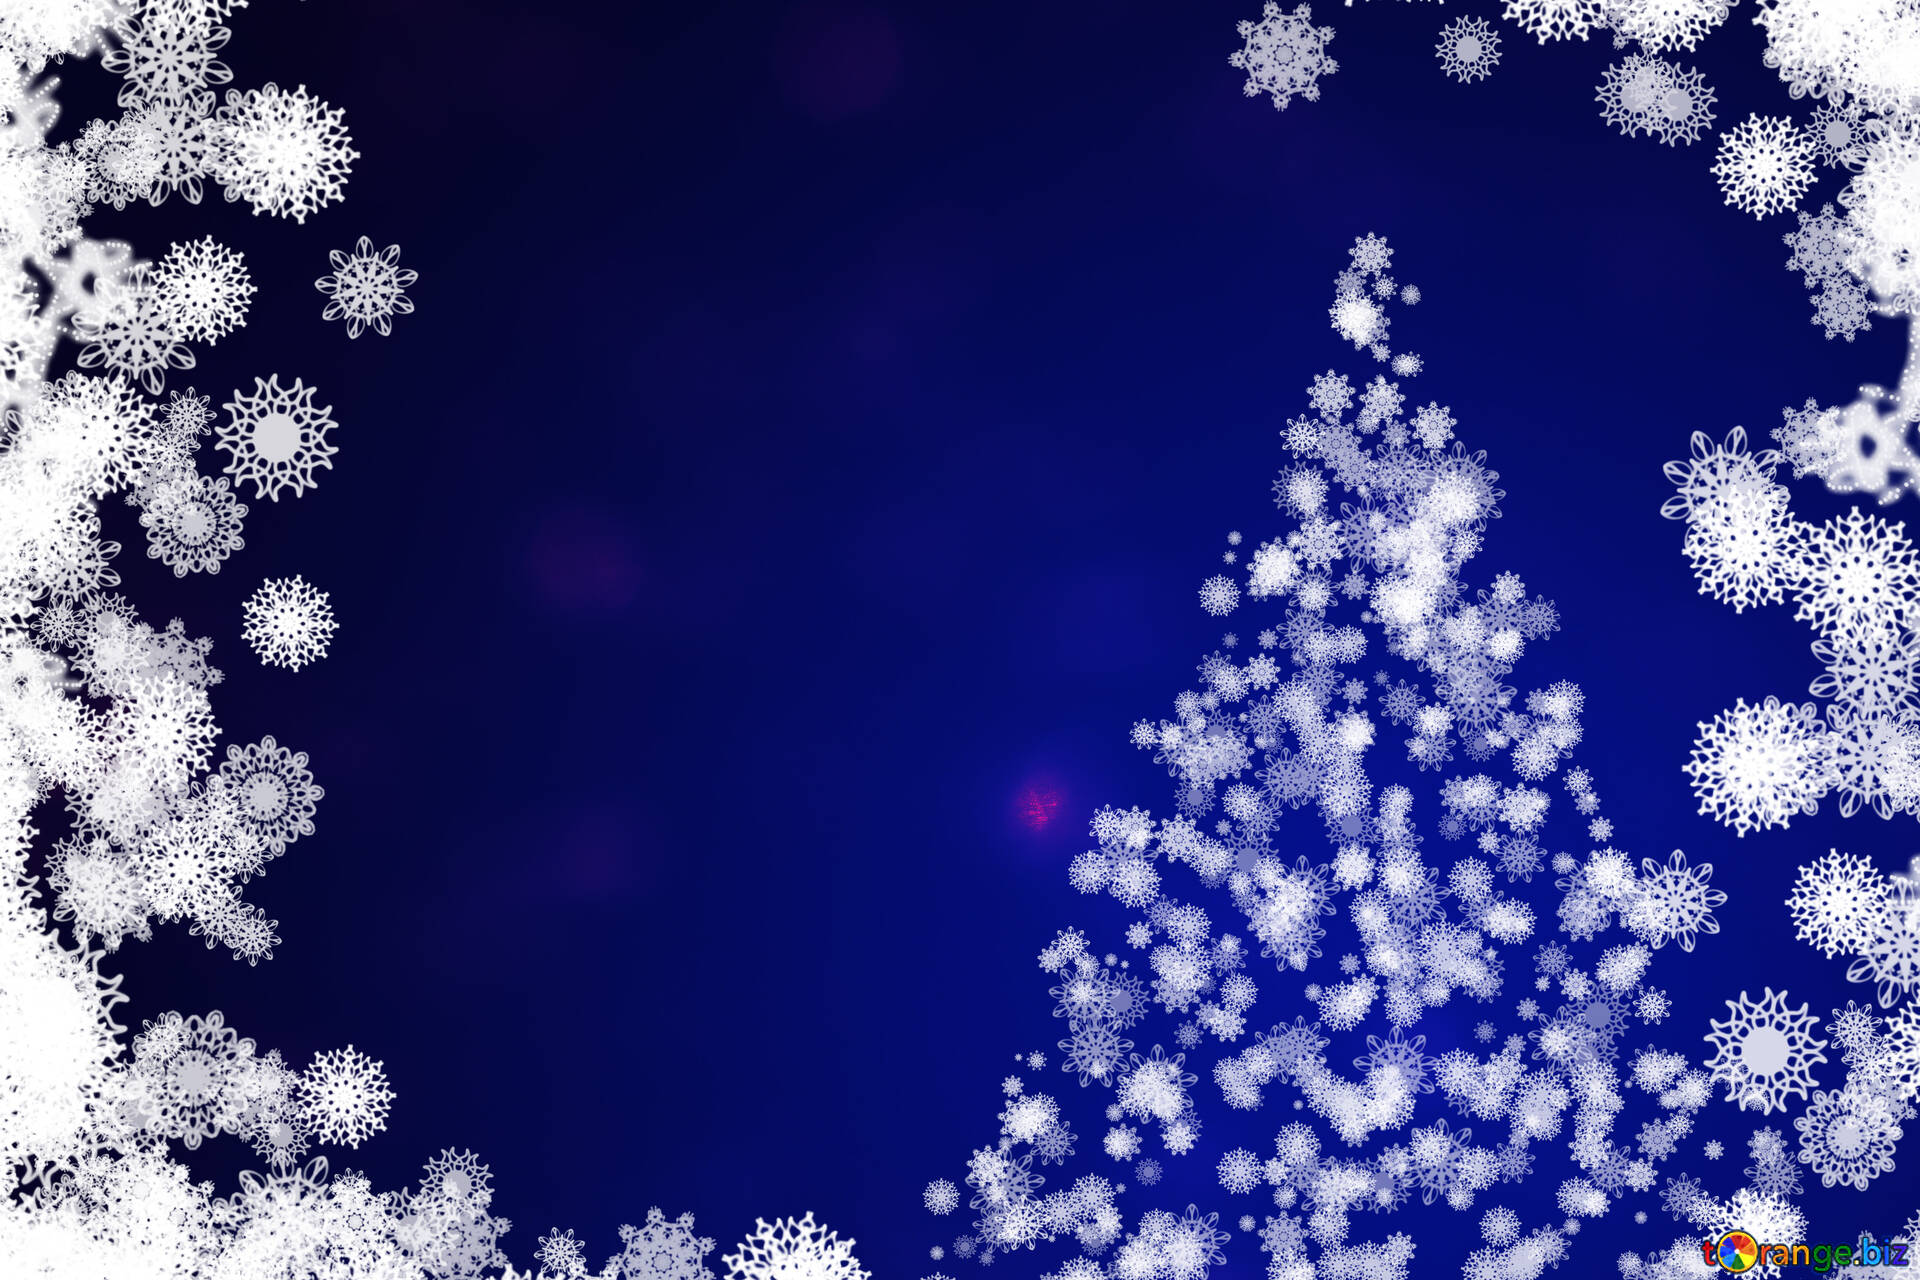 クリスマスツリーの写真 雪の結晶の背景クリップアート クリスマス ツリー クリップアート